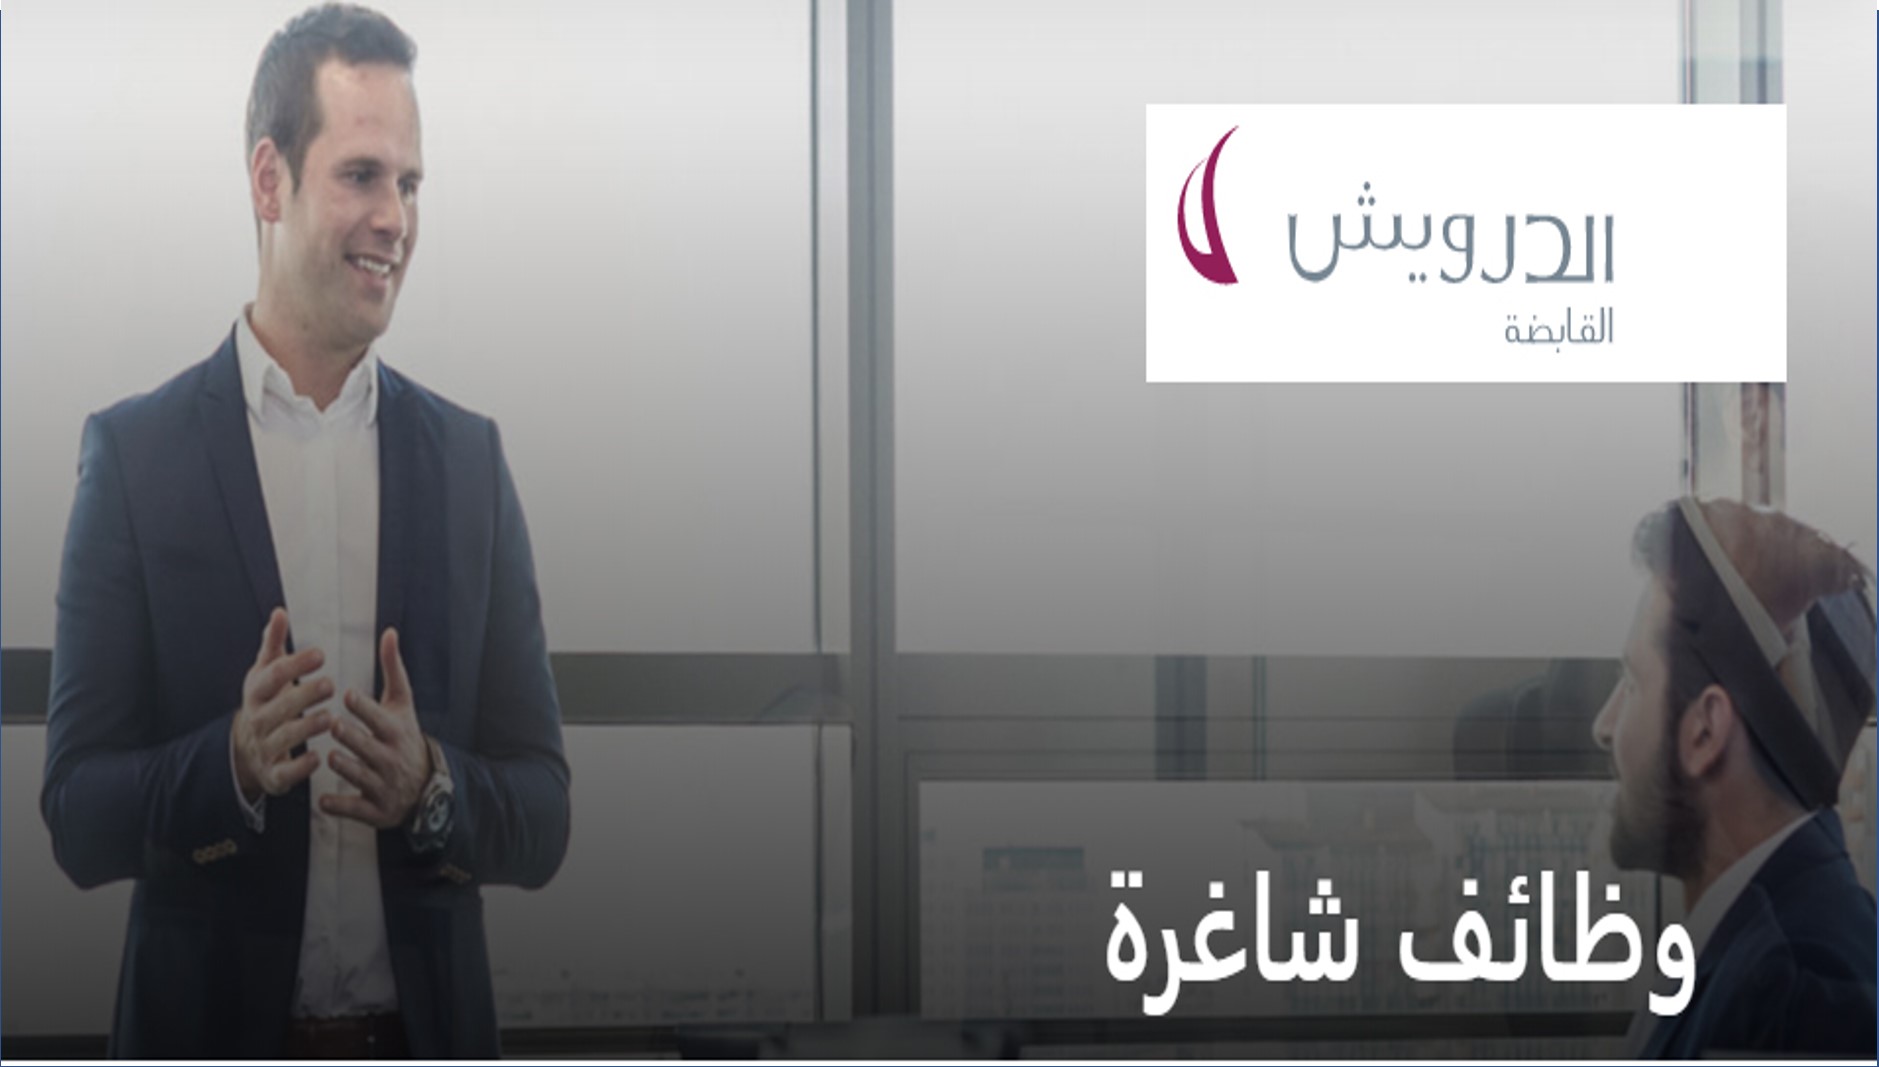 وظائف شاغرة في شركة الدرويش القابضة بدولة قطر